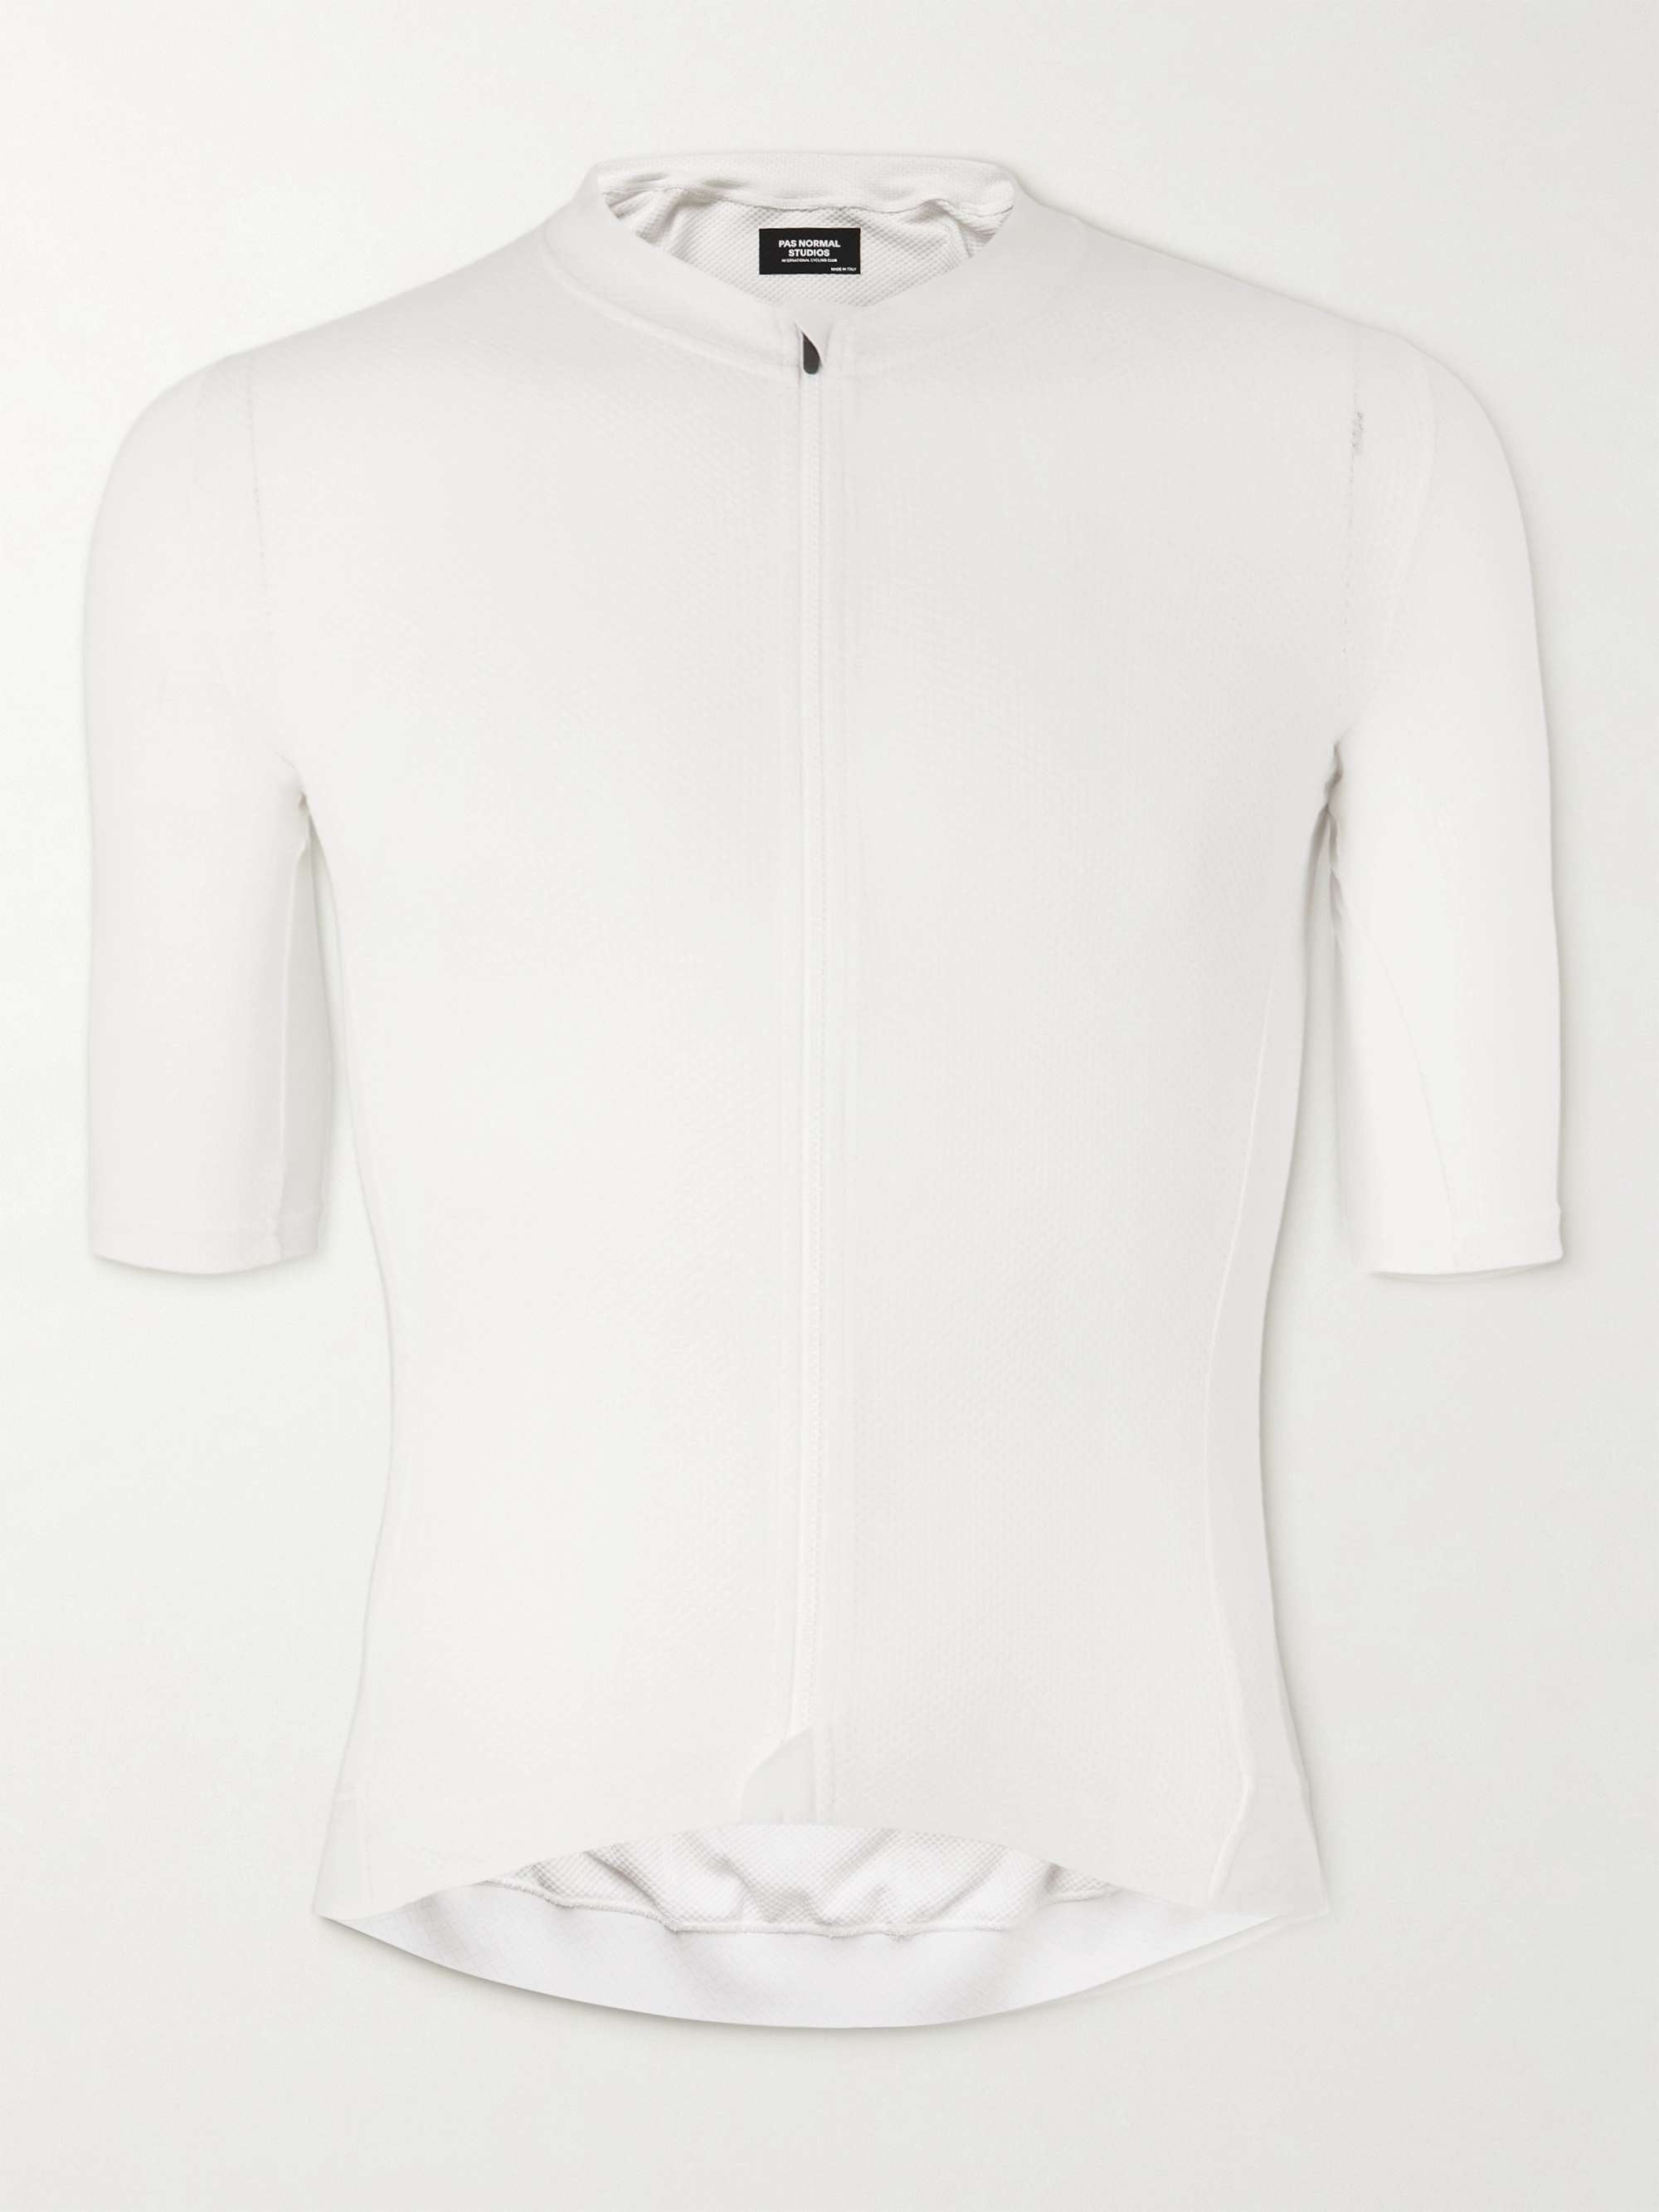 파 노말 스튜디오 사이클링 의류 PAS NORMAL STUDIOS Solitude Logo-Print Stretch-Mesh Cycling Jersey,White